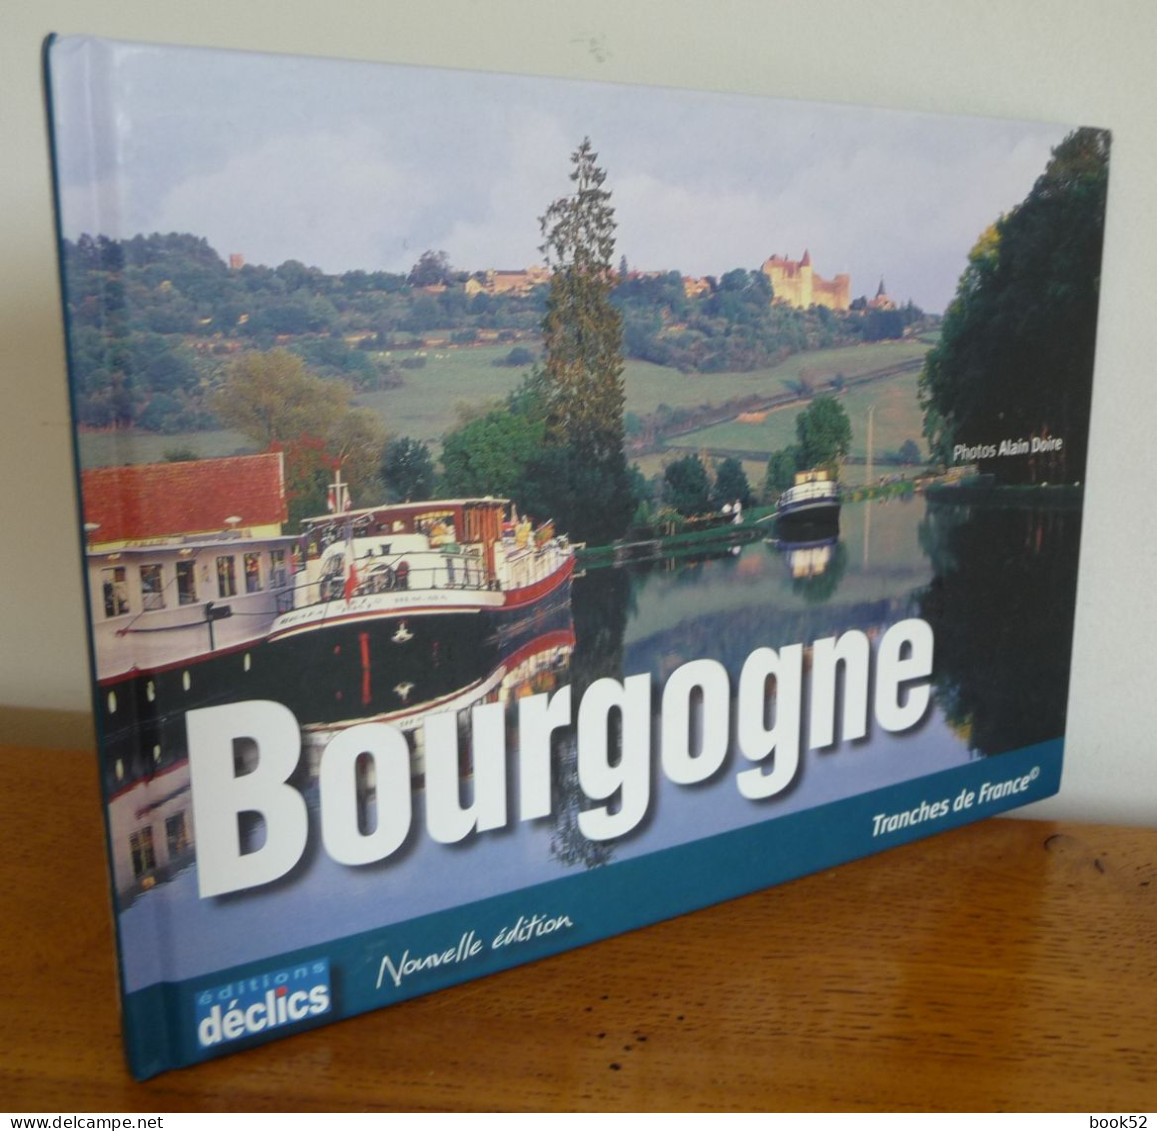 BOURGOGNE (Photos Alain Doire) (Nouvelle Edition) - Bourgogne